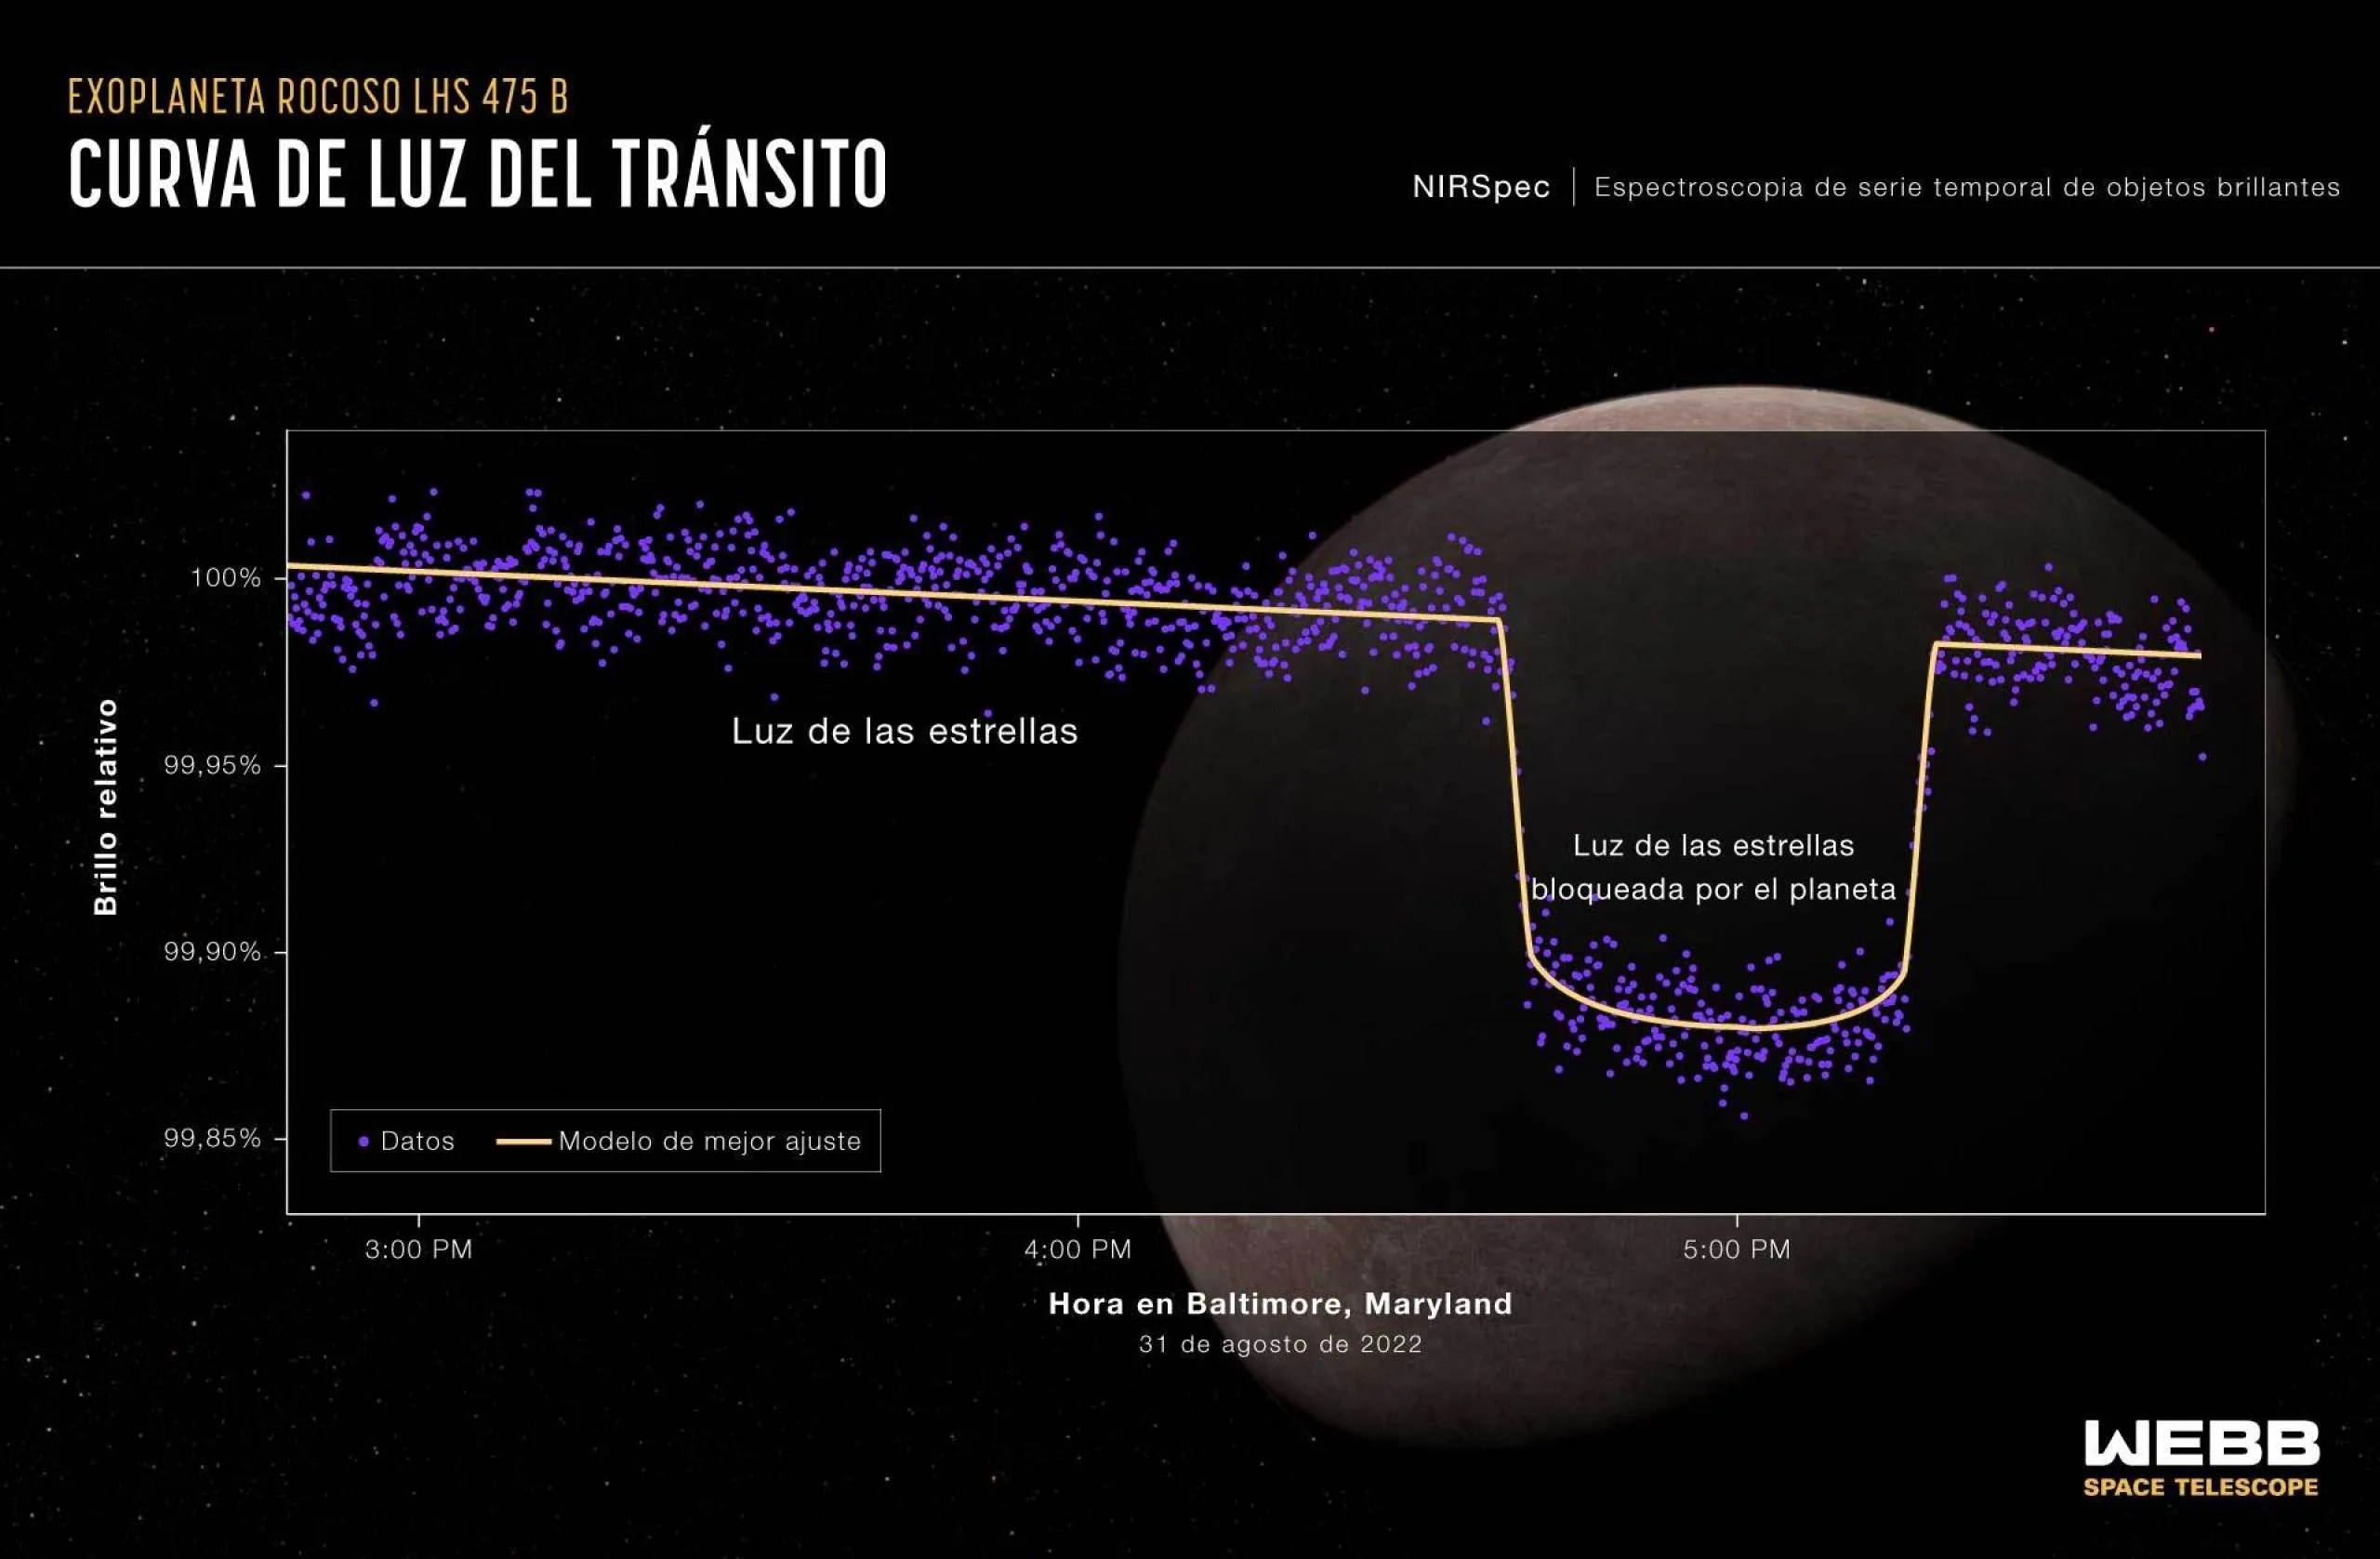 Gráfica titulada “Exoplaneta rocoso LHS 475 b, Curva de luz del tránsito, Espectroscopia de serie temporal de objetos brillantes de NIRSpec”. Detrás de la gráfica hay una ilustración del planeta y su estrella.